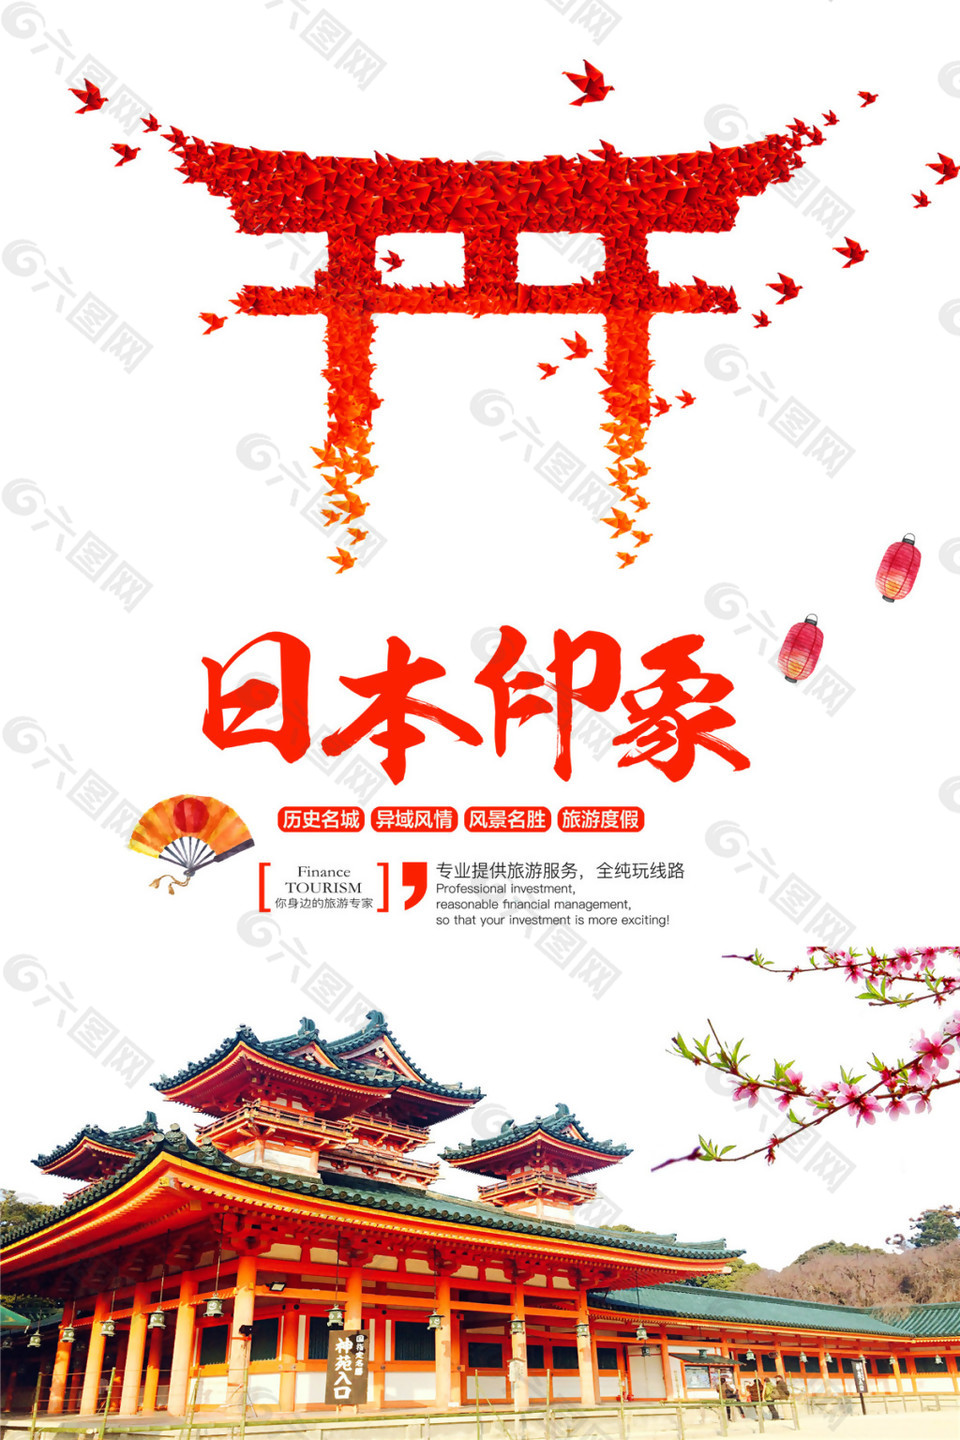 简约热闹红色枫叶拱门日本旅游装饰元素